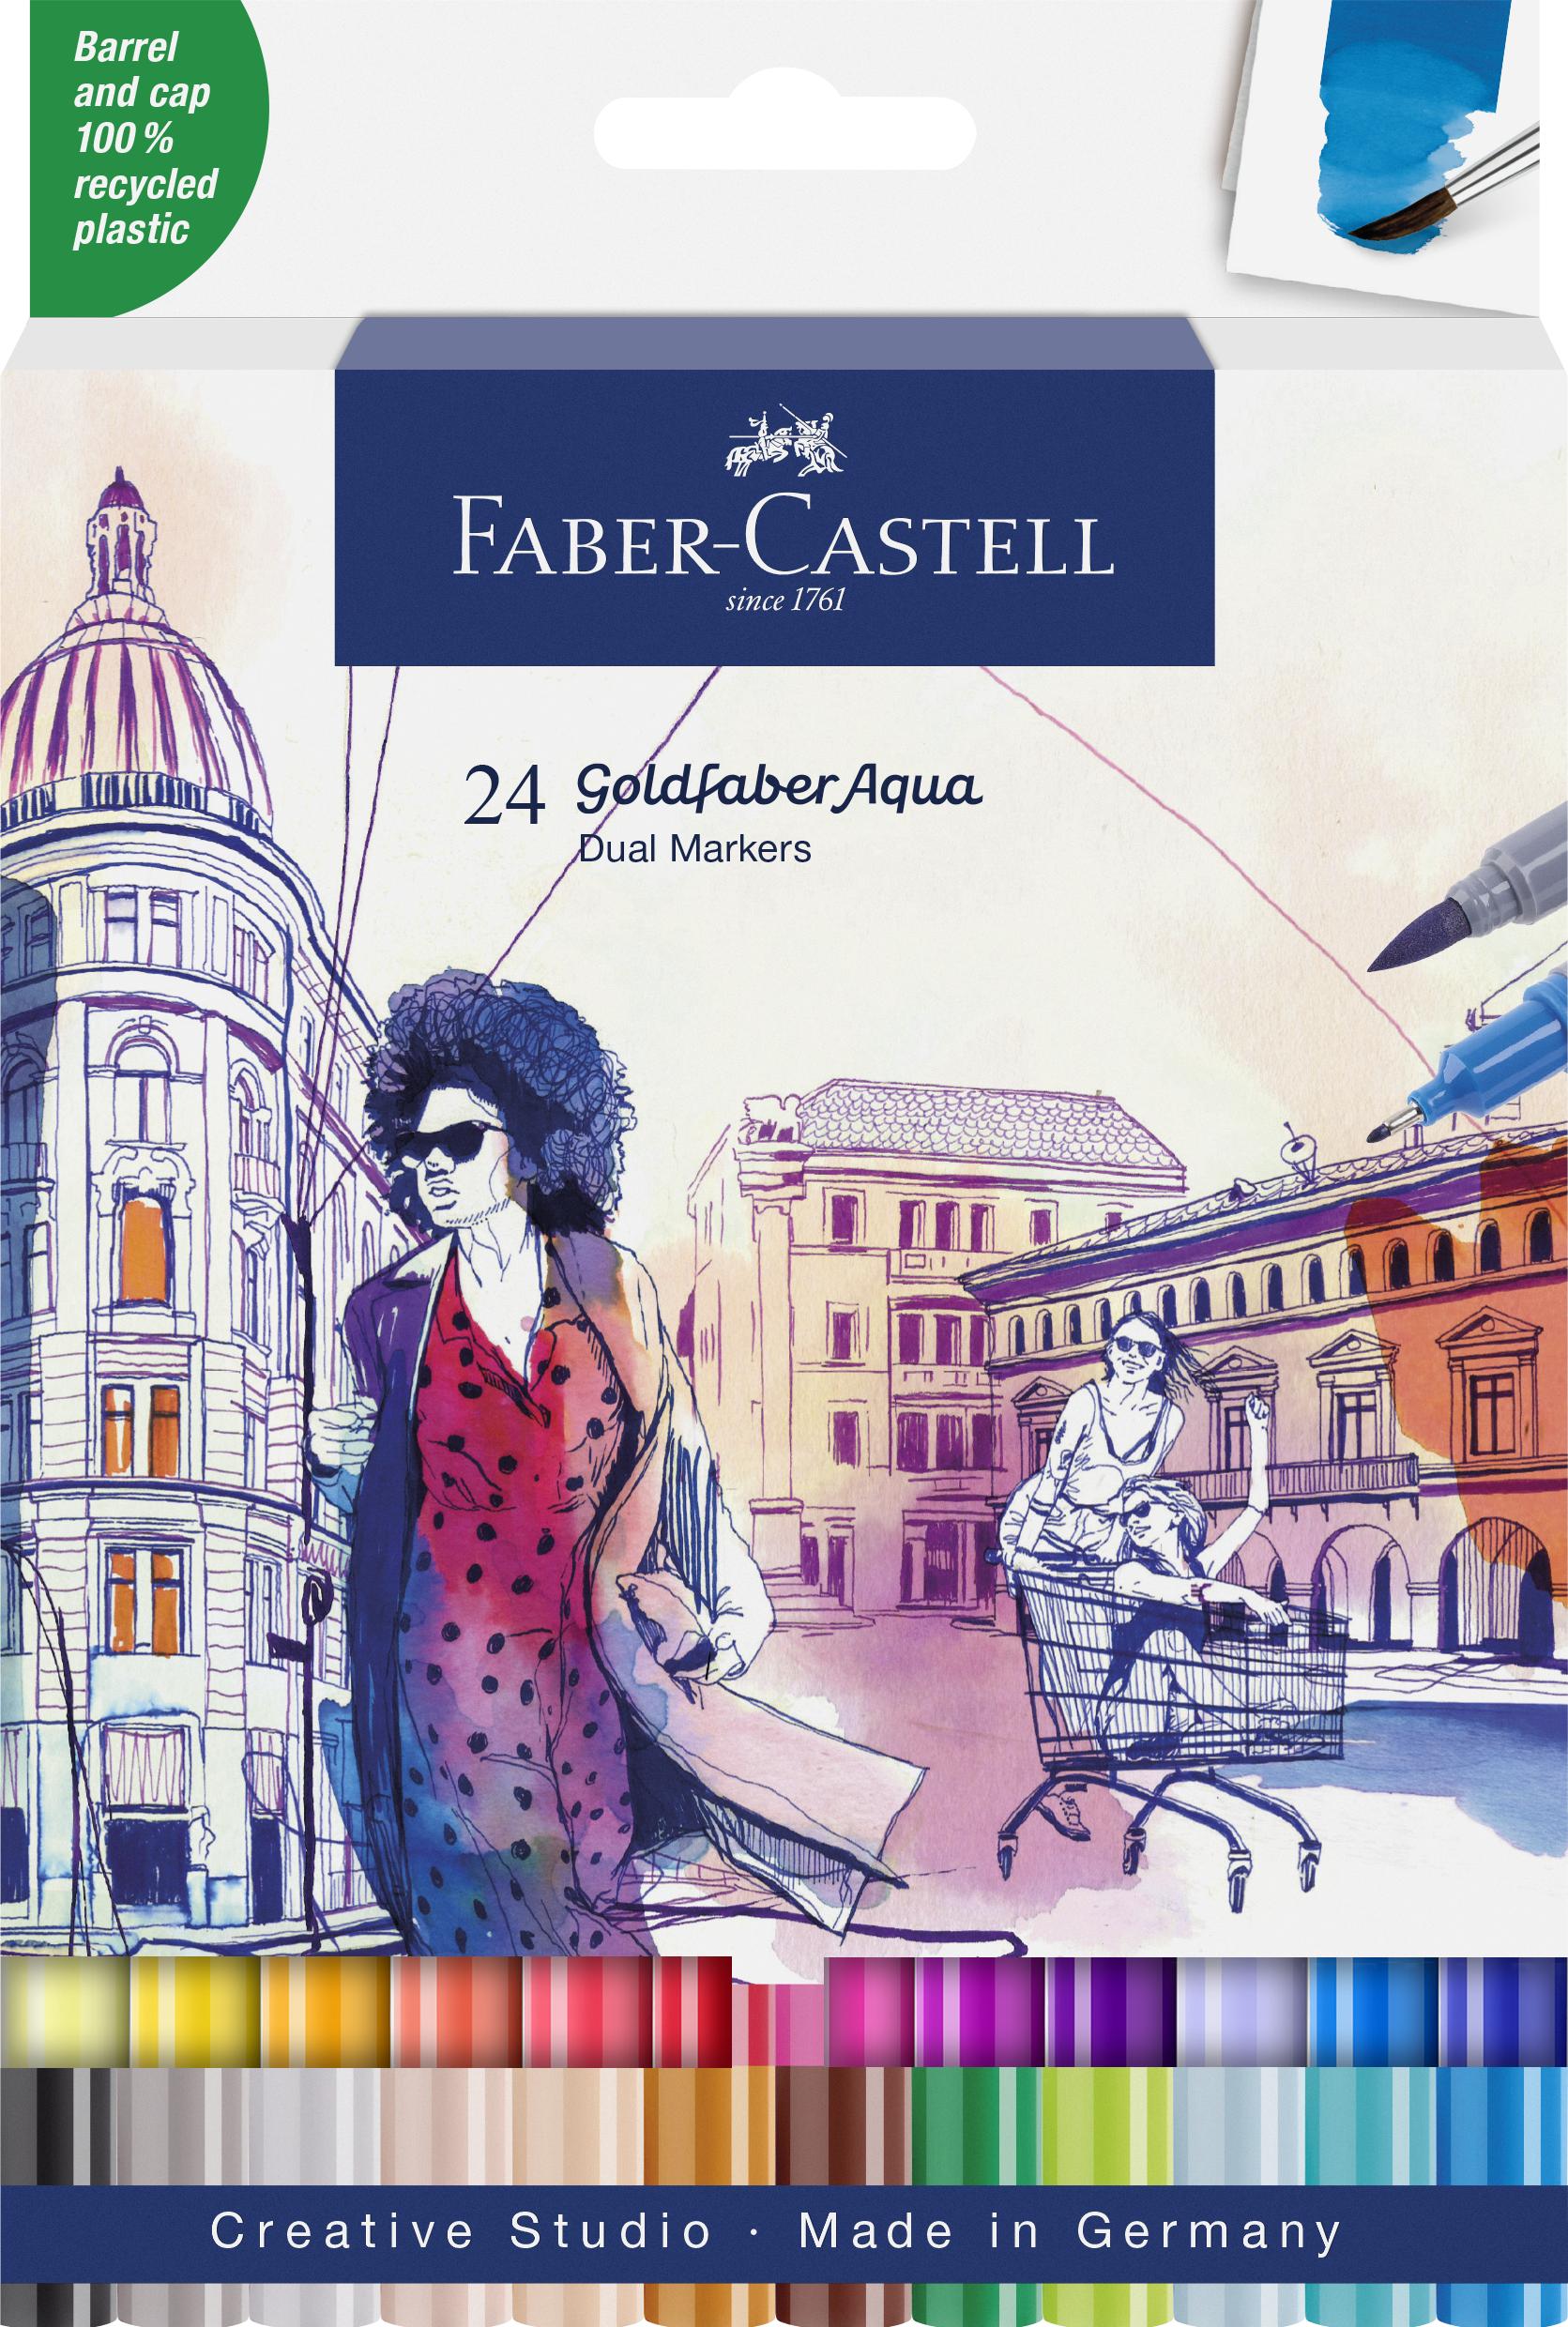 Faber-Castell - Gofa Aqua Dual Marker wallet (24 pcs) (164624) thumbnail-1